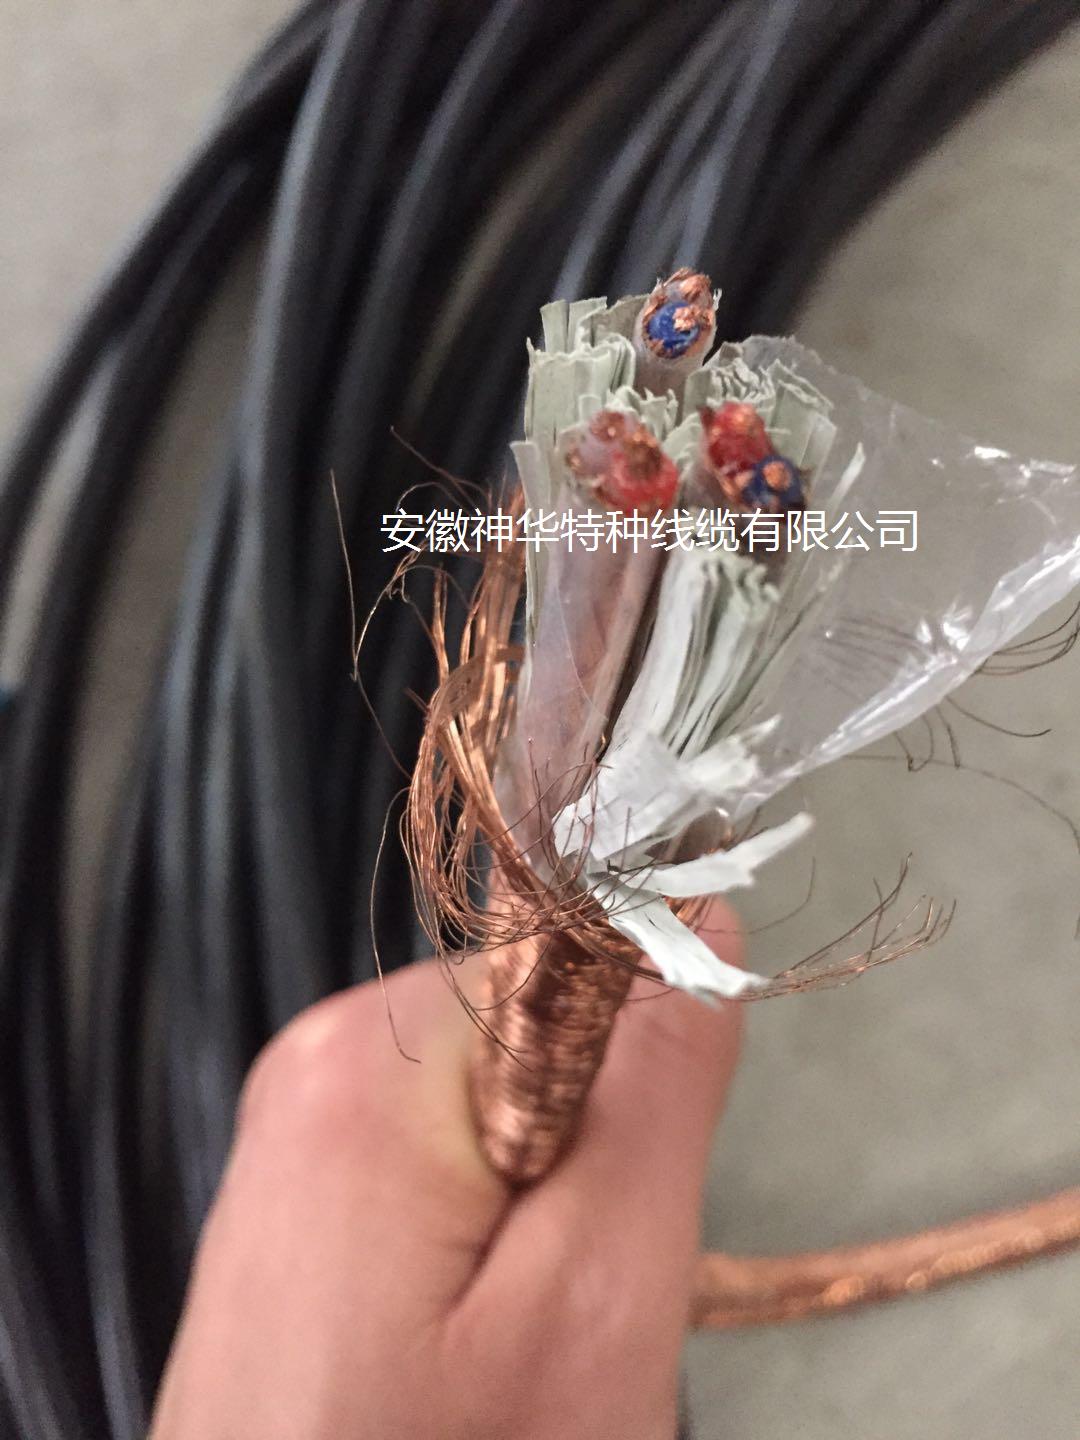 安徽神华DJYPVPR-3*2*1.5计算机电缆